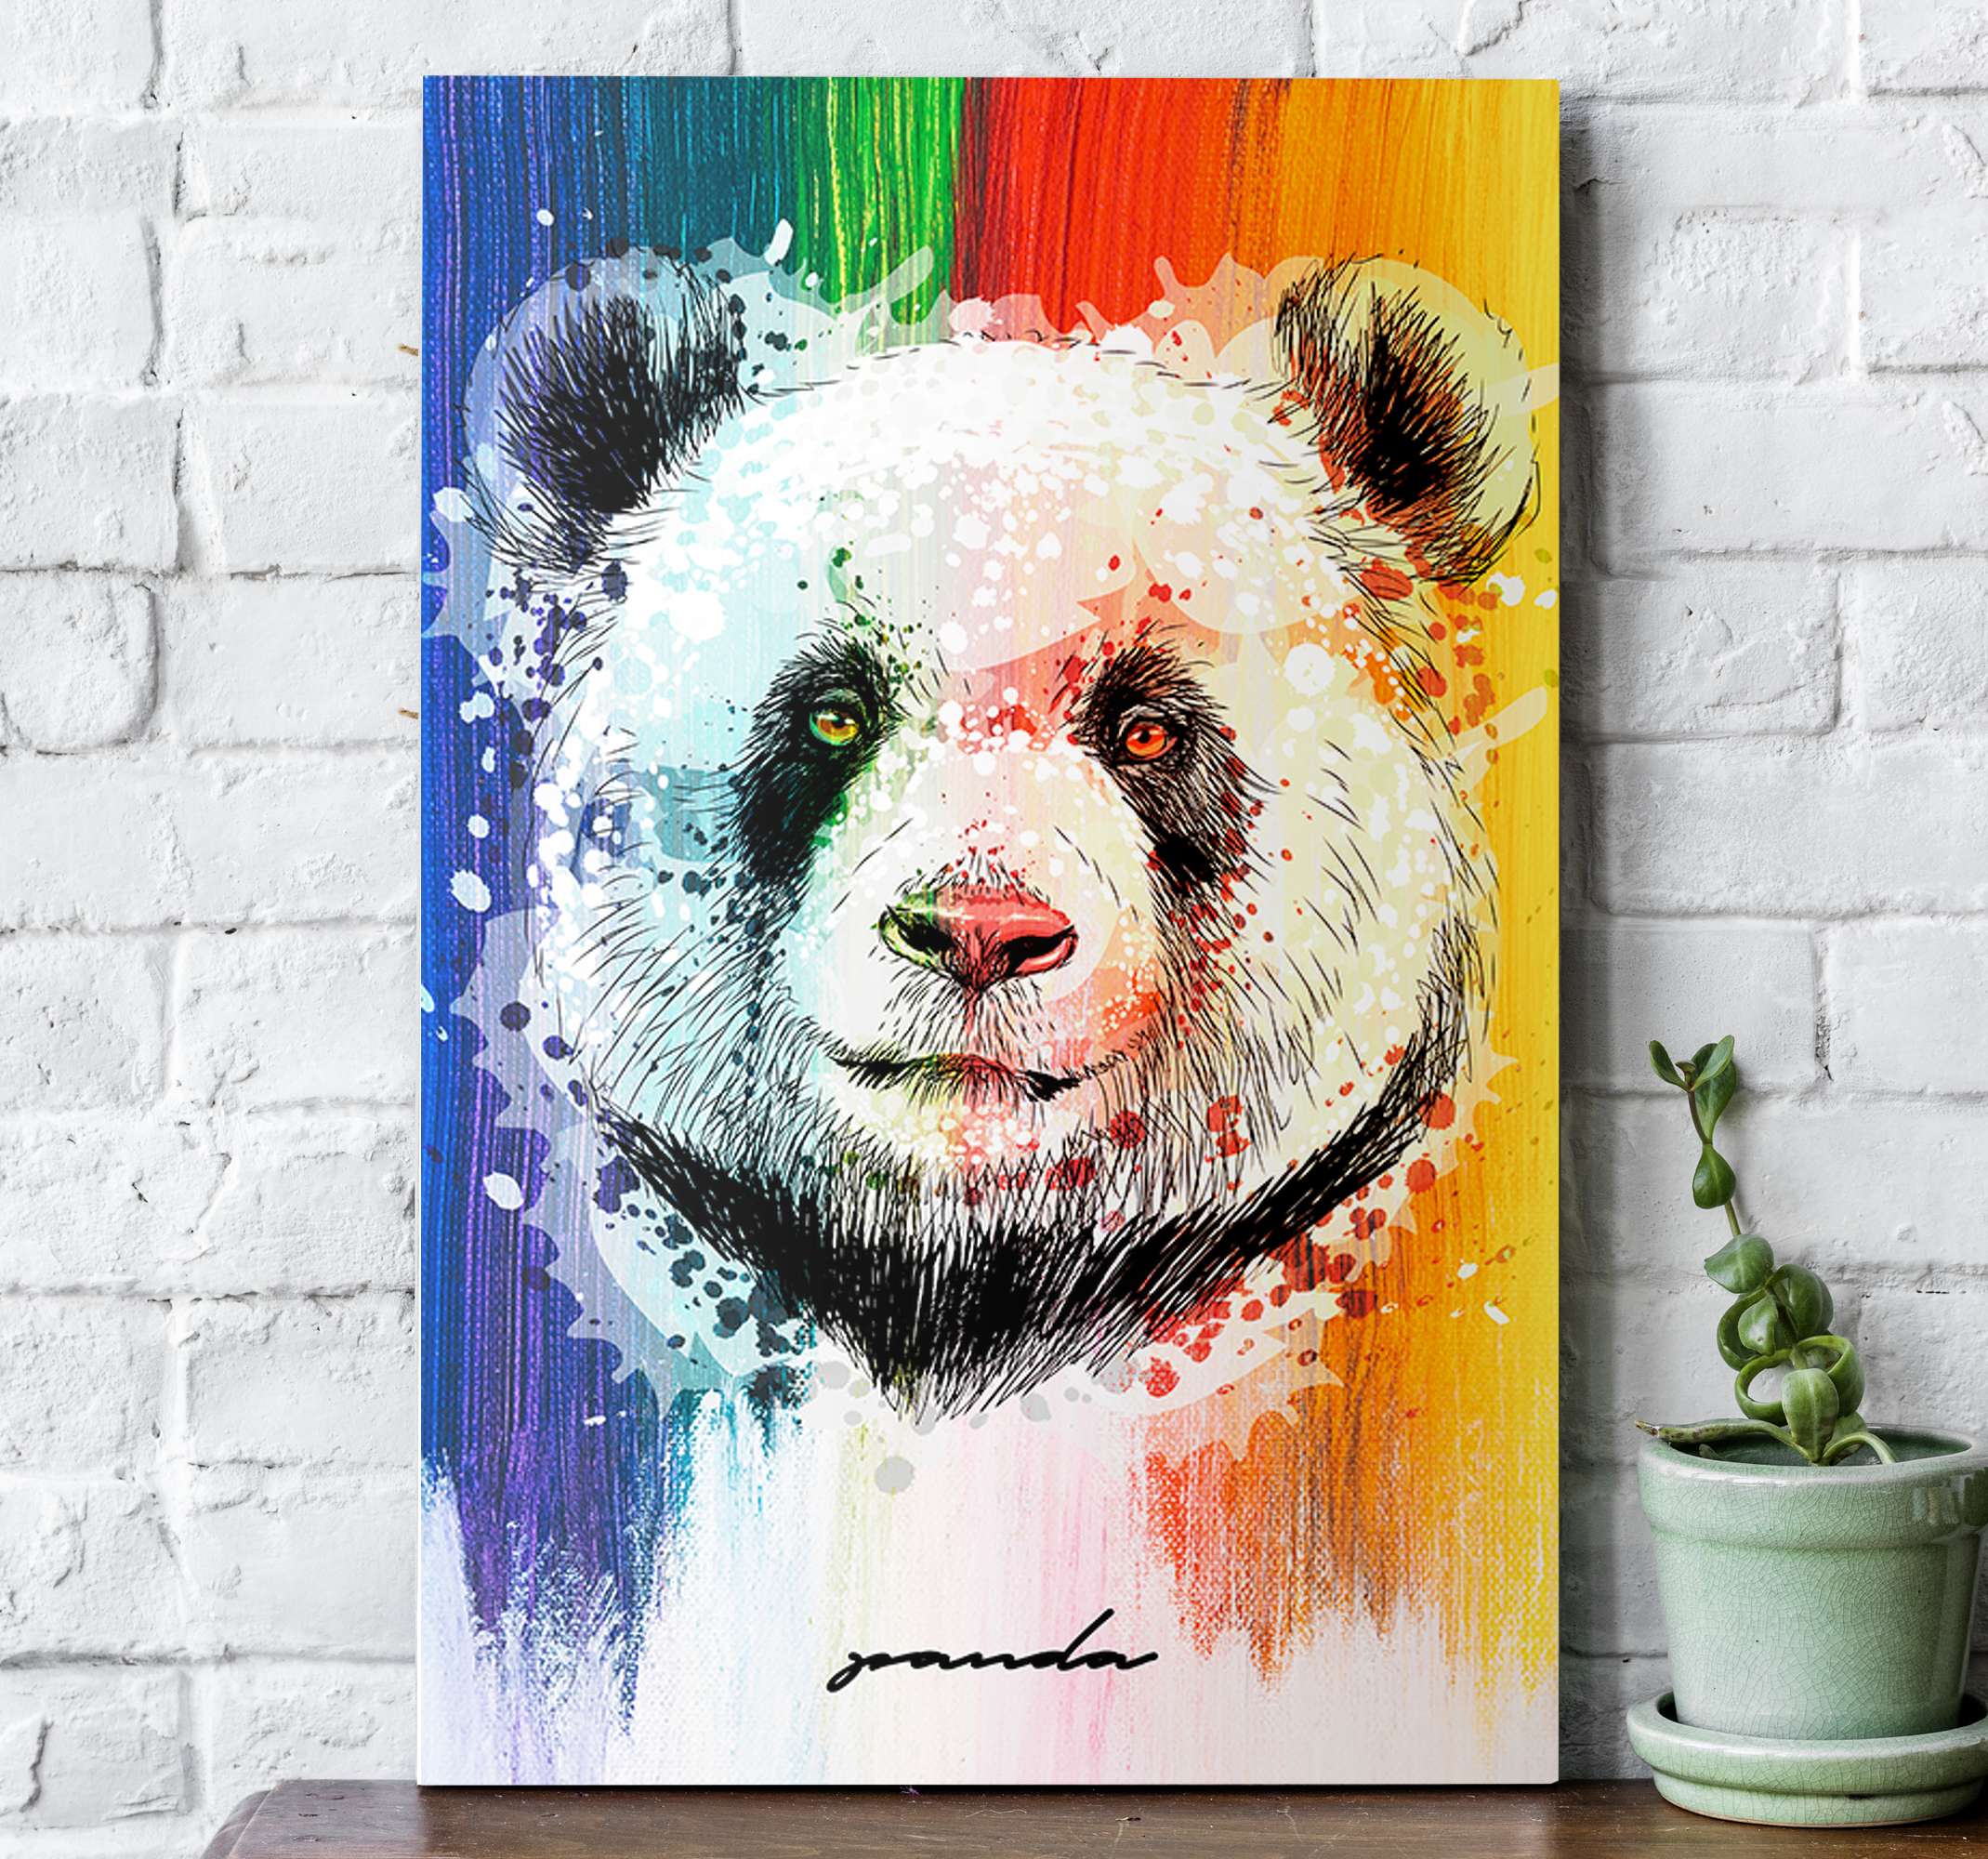 Adesivo de parede árvore com ursos panda